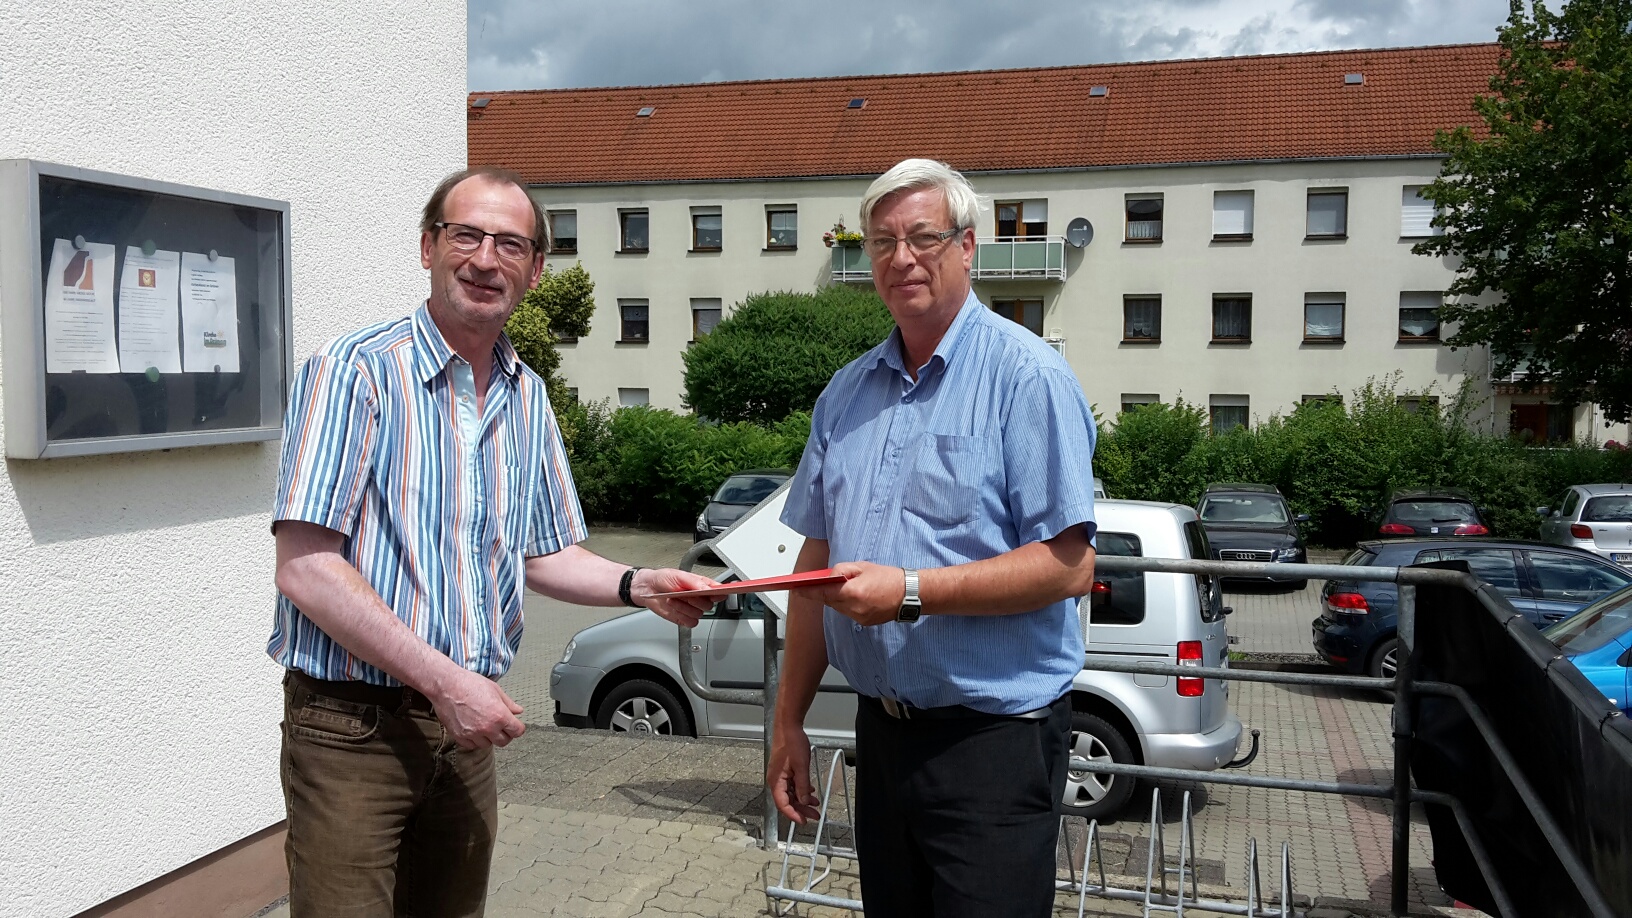 Mitgliederbeauftragter Lutz Kromke gratuliert Peter Menzel zu 15 Jahren SPD Mitgliedschaft